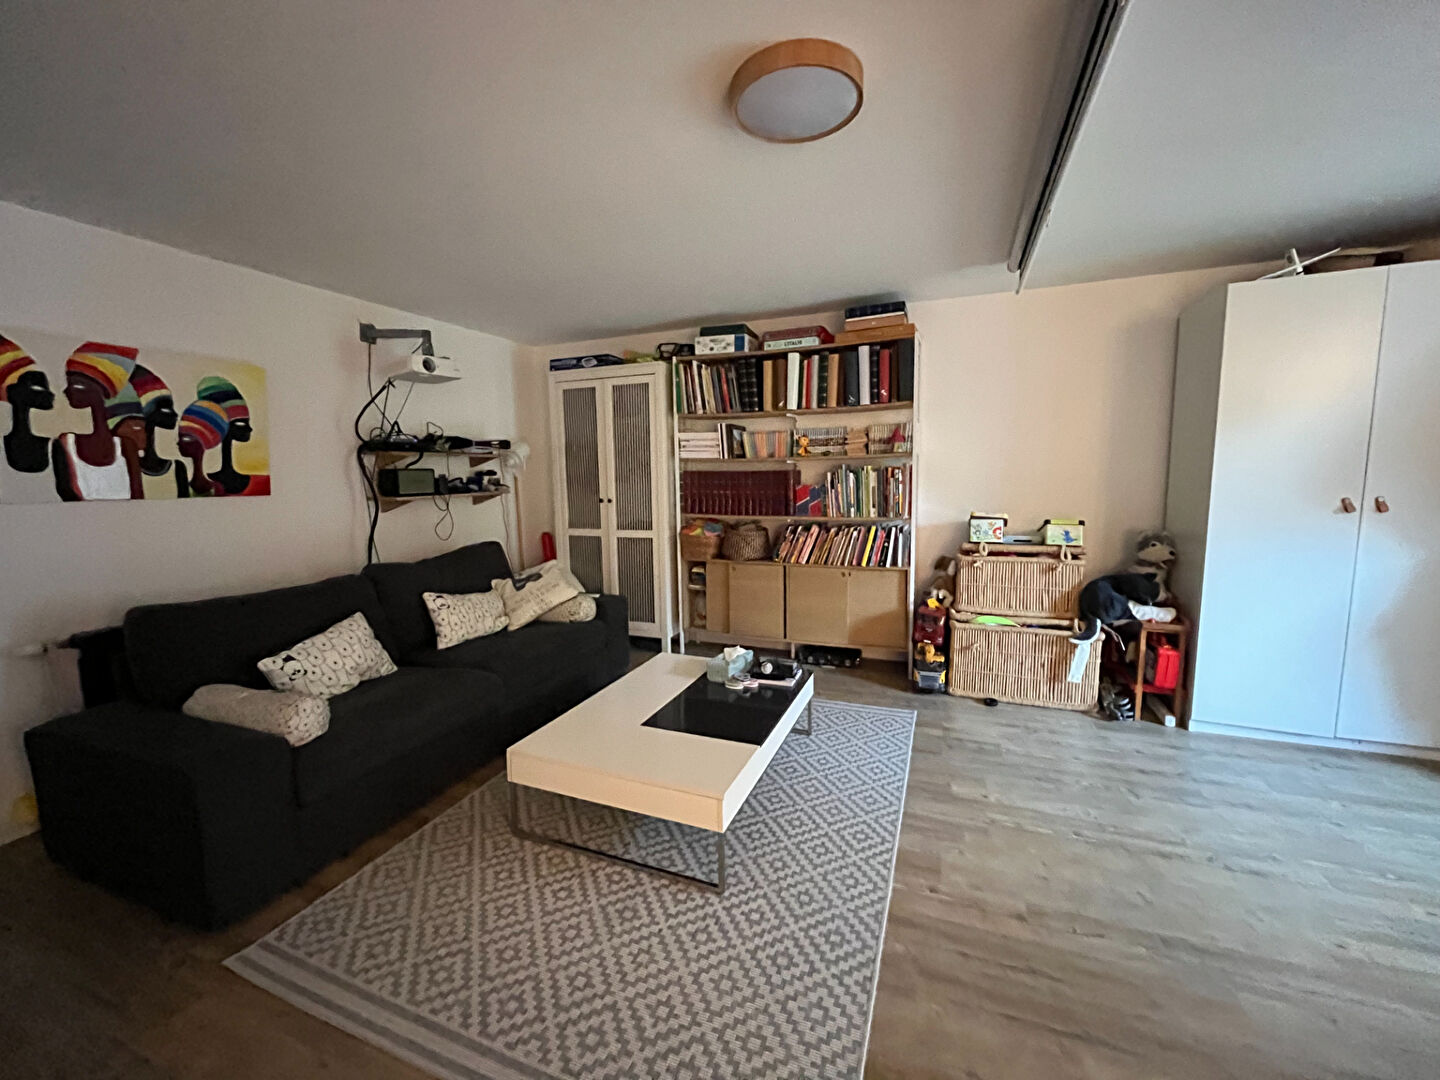 Maison 7 pièces - 153 m² environ - 54285616h.jpg | Kermarrec Habitation